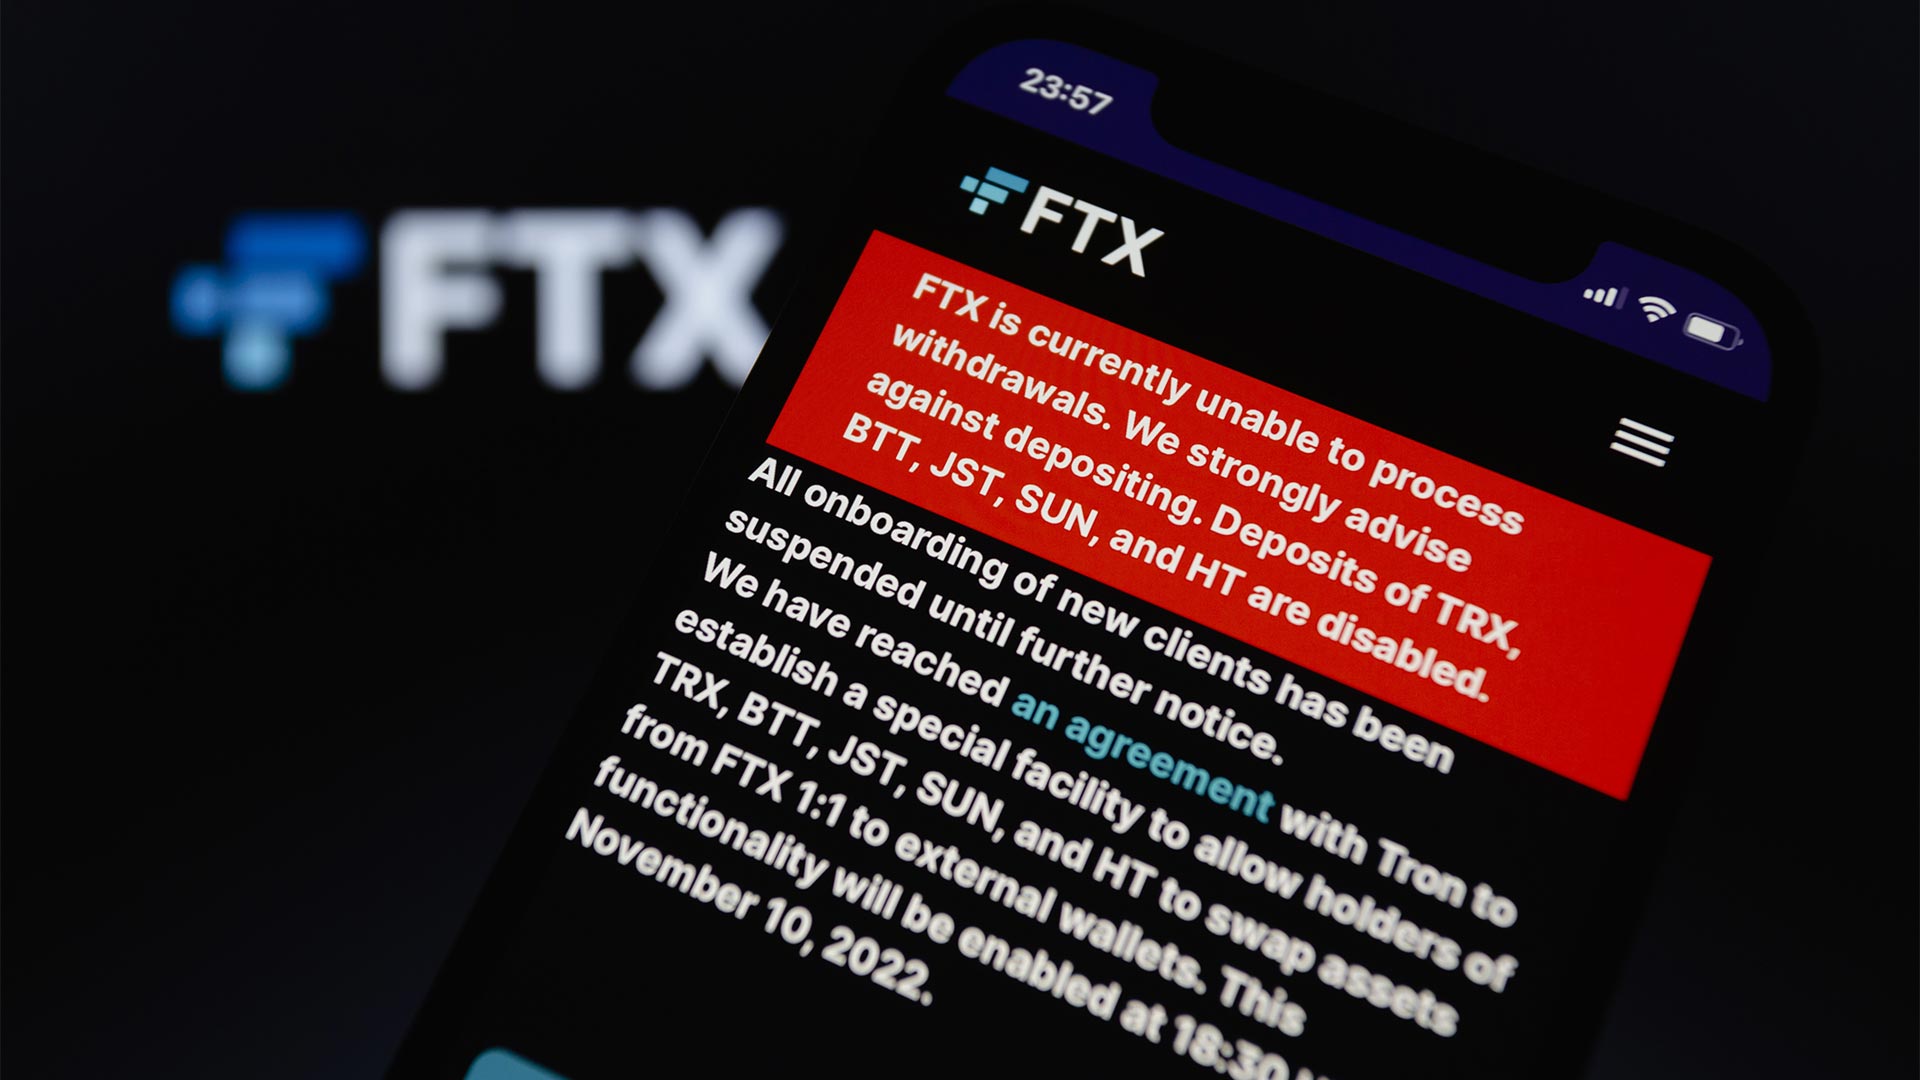 Warnung der FTX auf einem Smartphone-Display | picture alliance / ZUMAPRESS.com